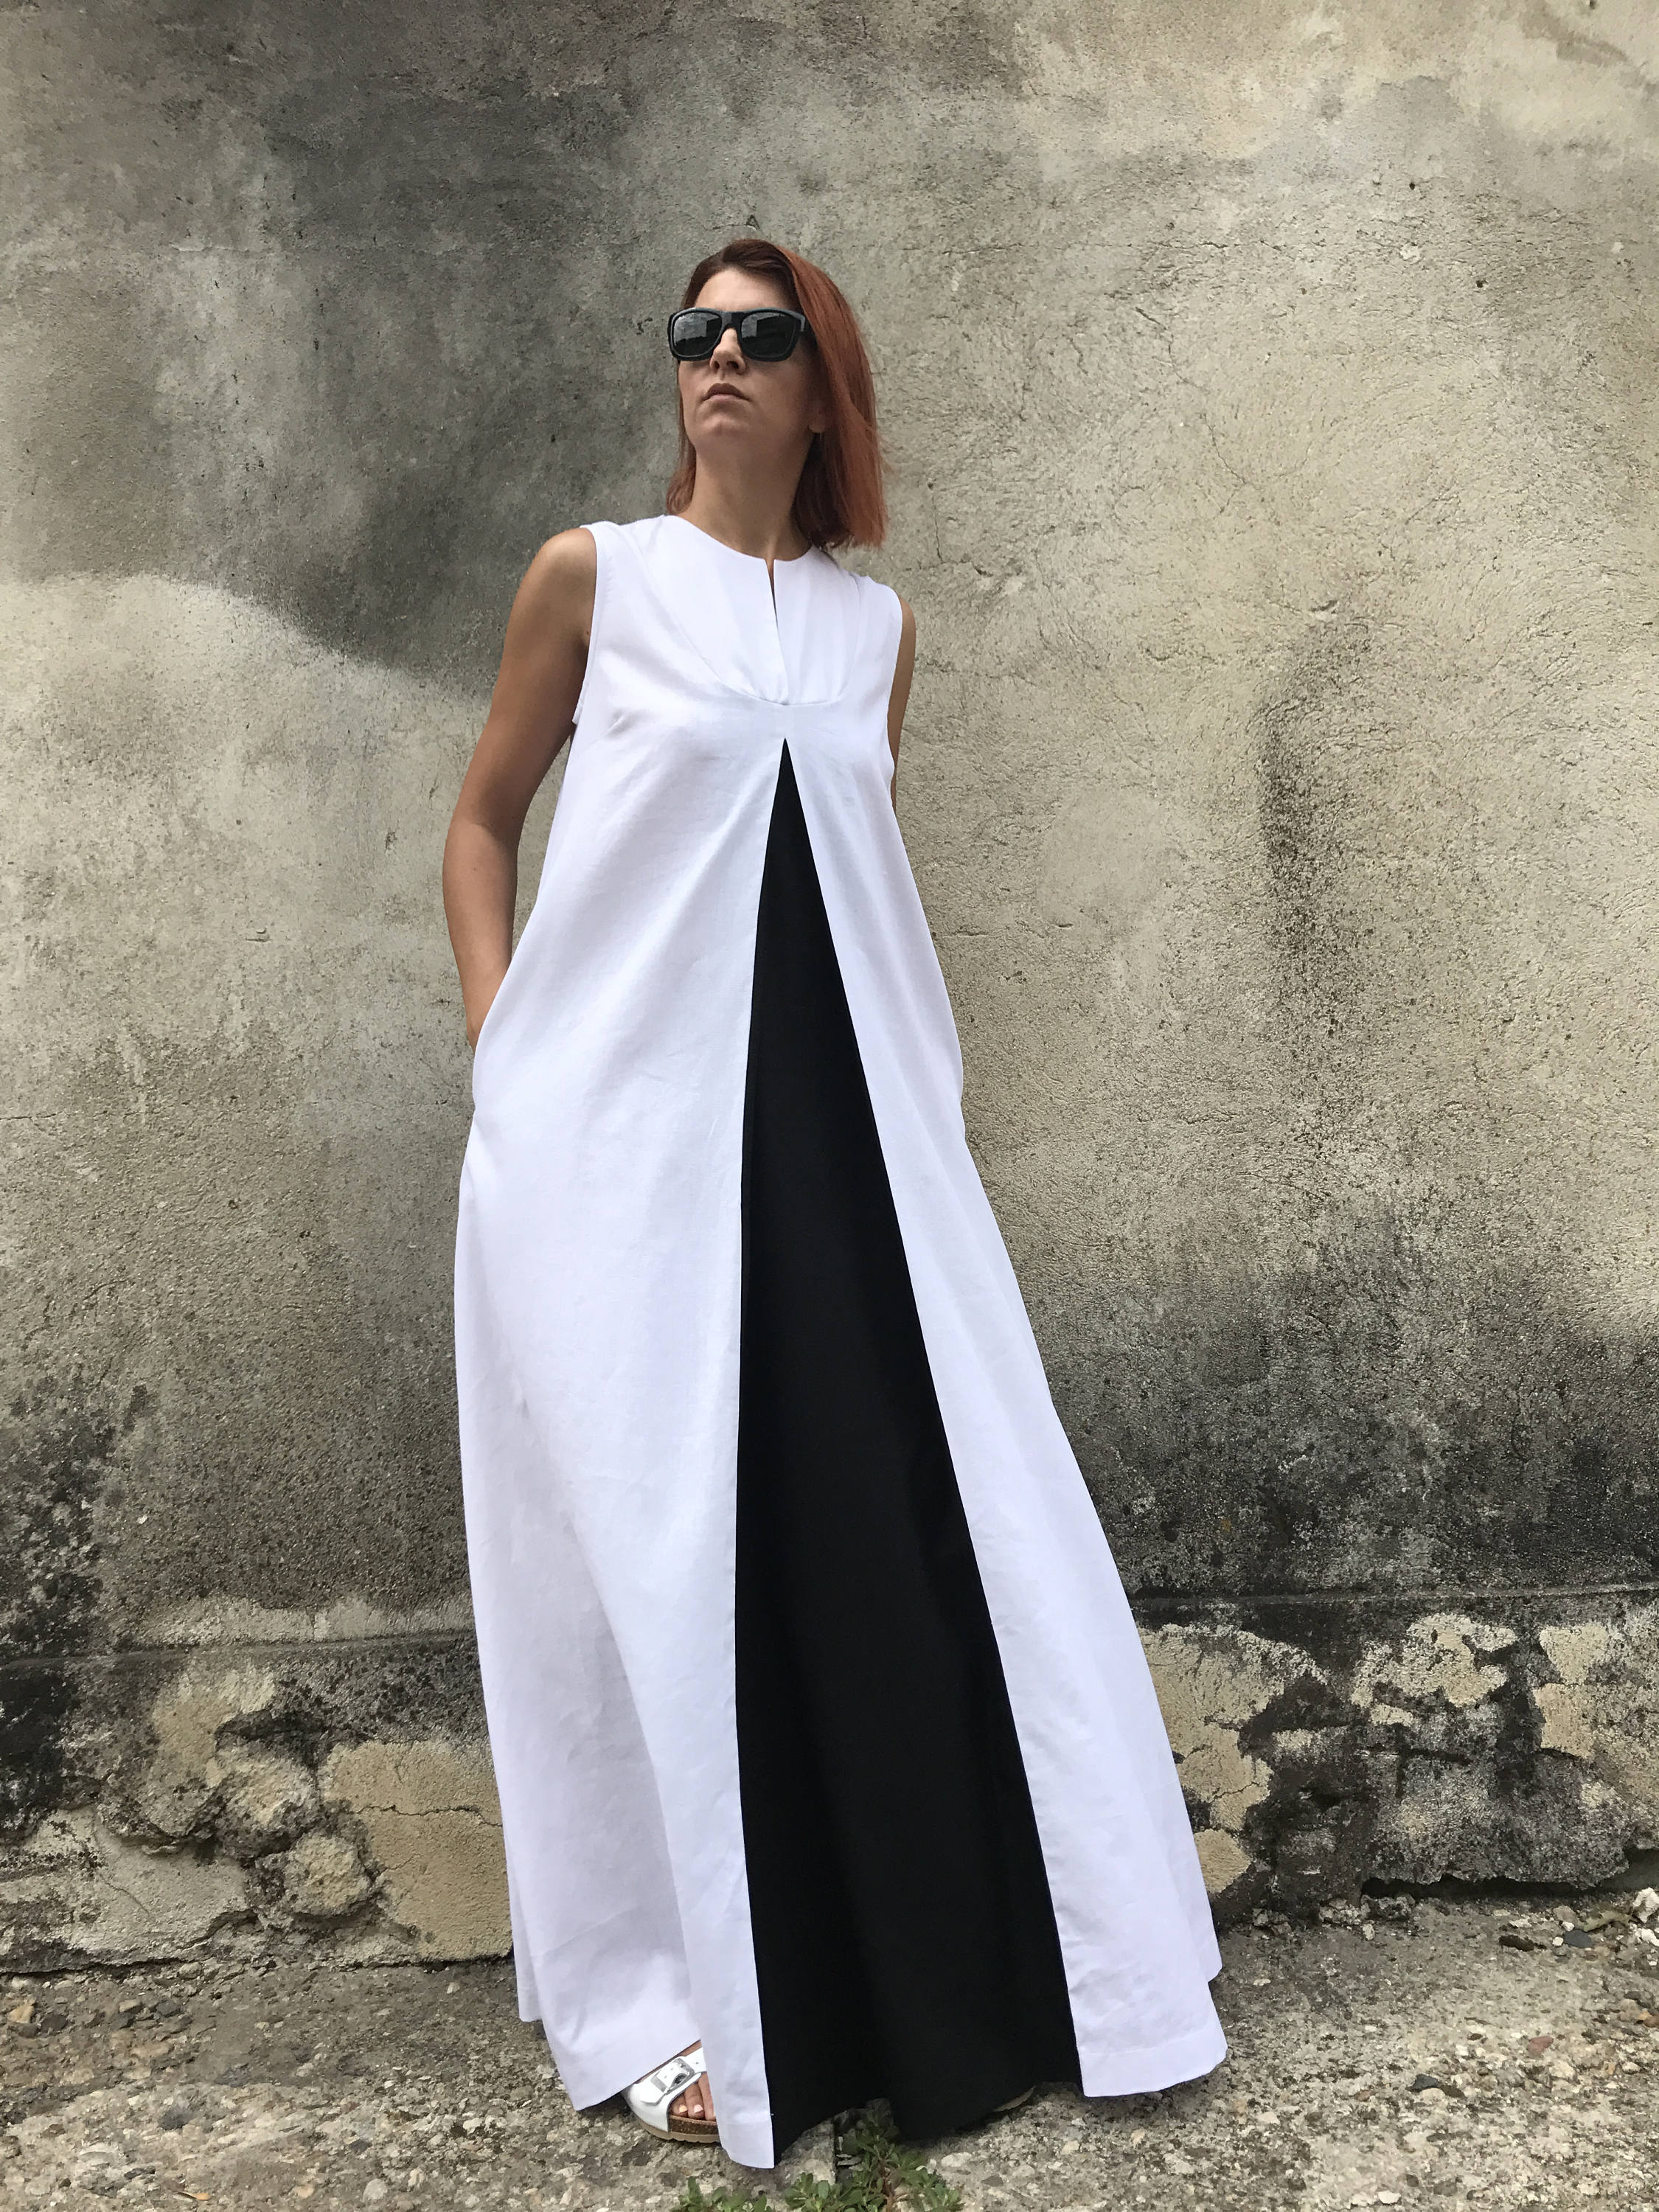 White Linen Dress Plus Size Linen Dress Linen Dress White | Etsy